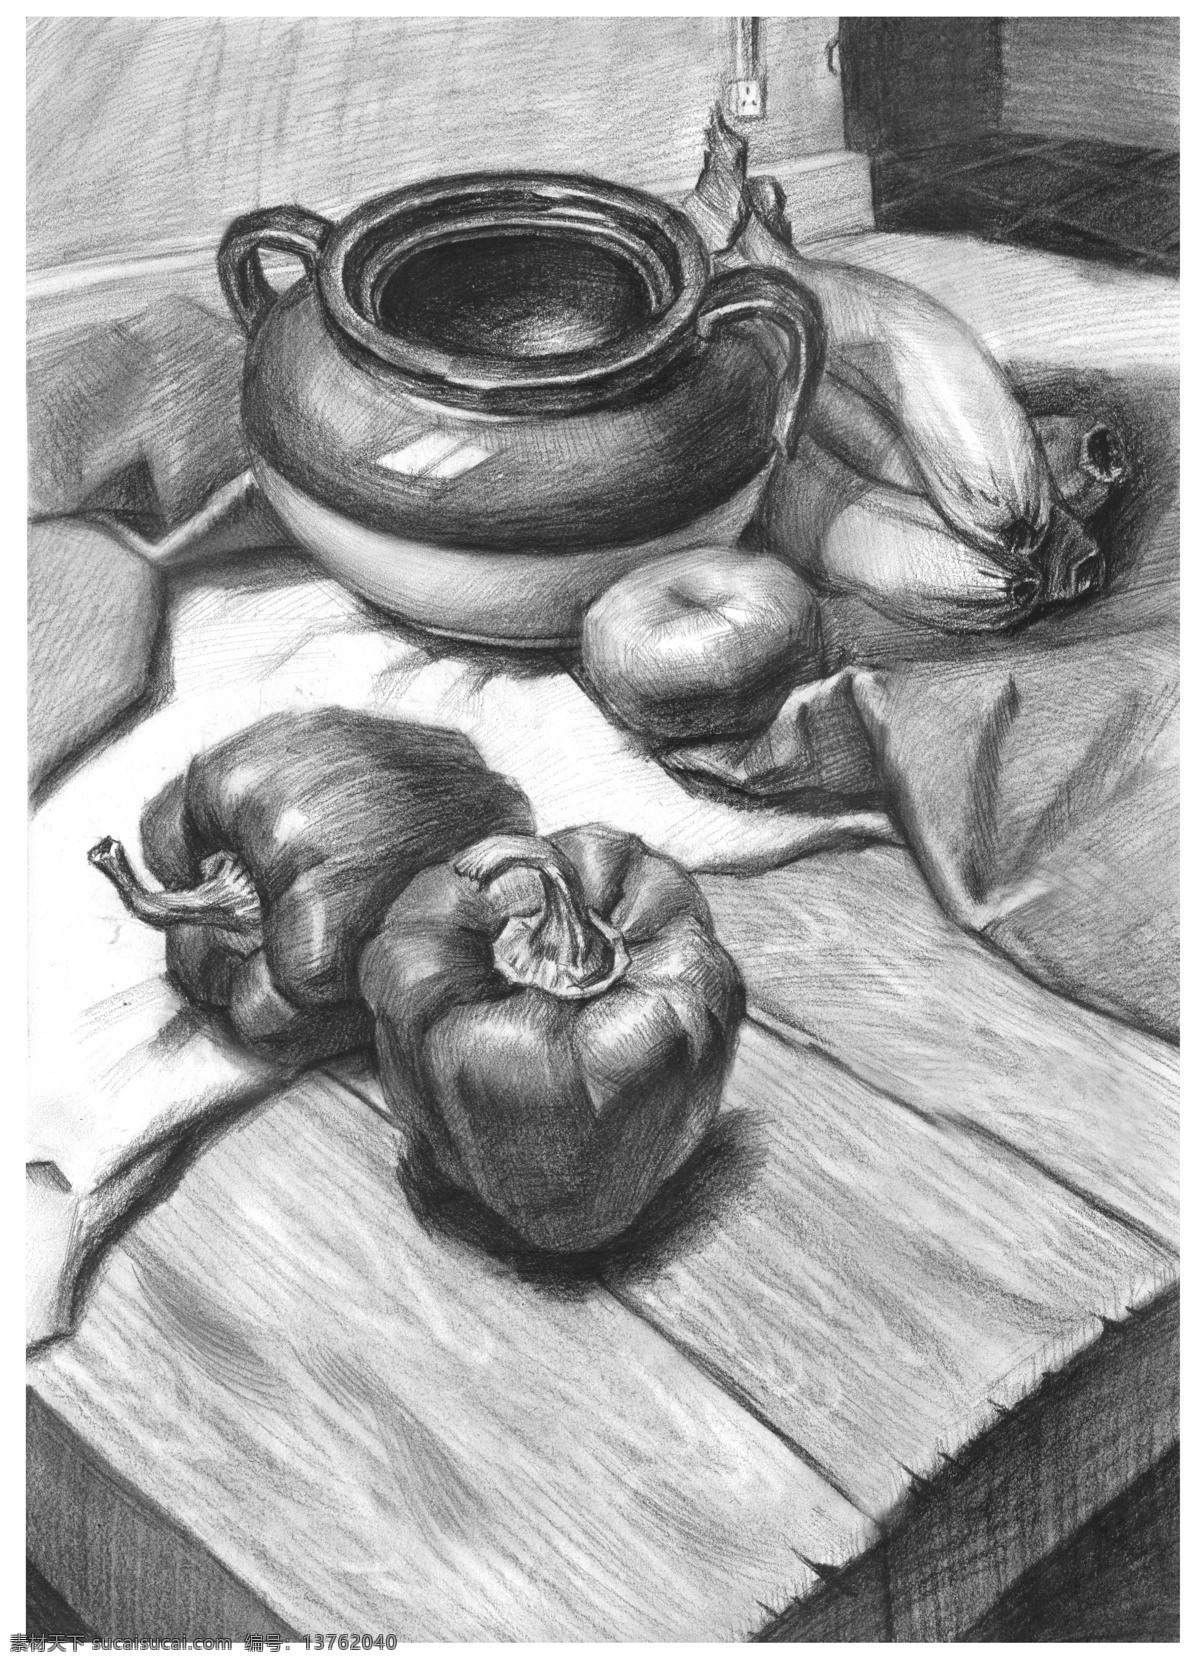 静物素描 辣椒 布 素描 炭笔素描 铅笔素描 组合体 香蕉 陶罐 西红柿 木板质桌子 绘画书法 文化艺术